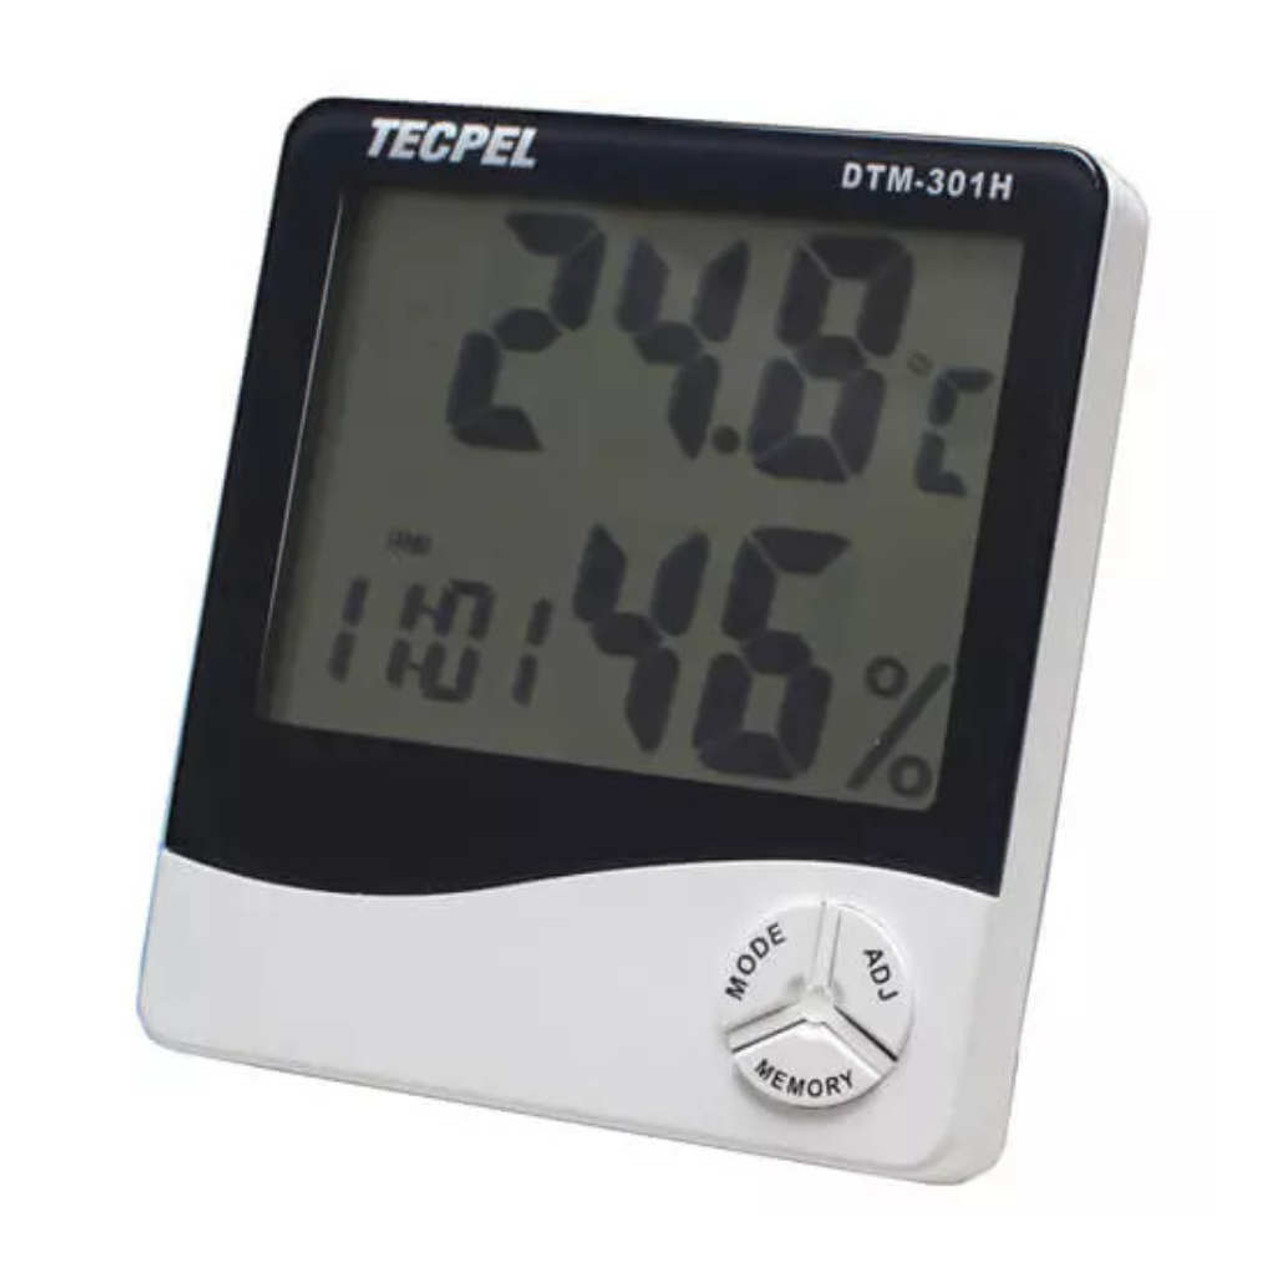 Station météo LCD couleur - Thermomètre int./ext. / Hygromètre int./ext.